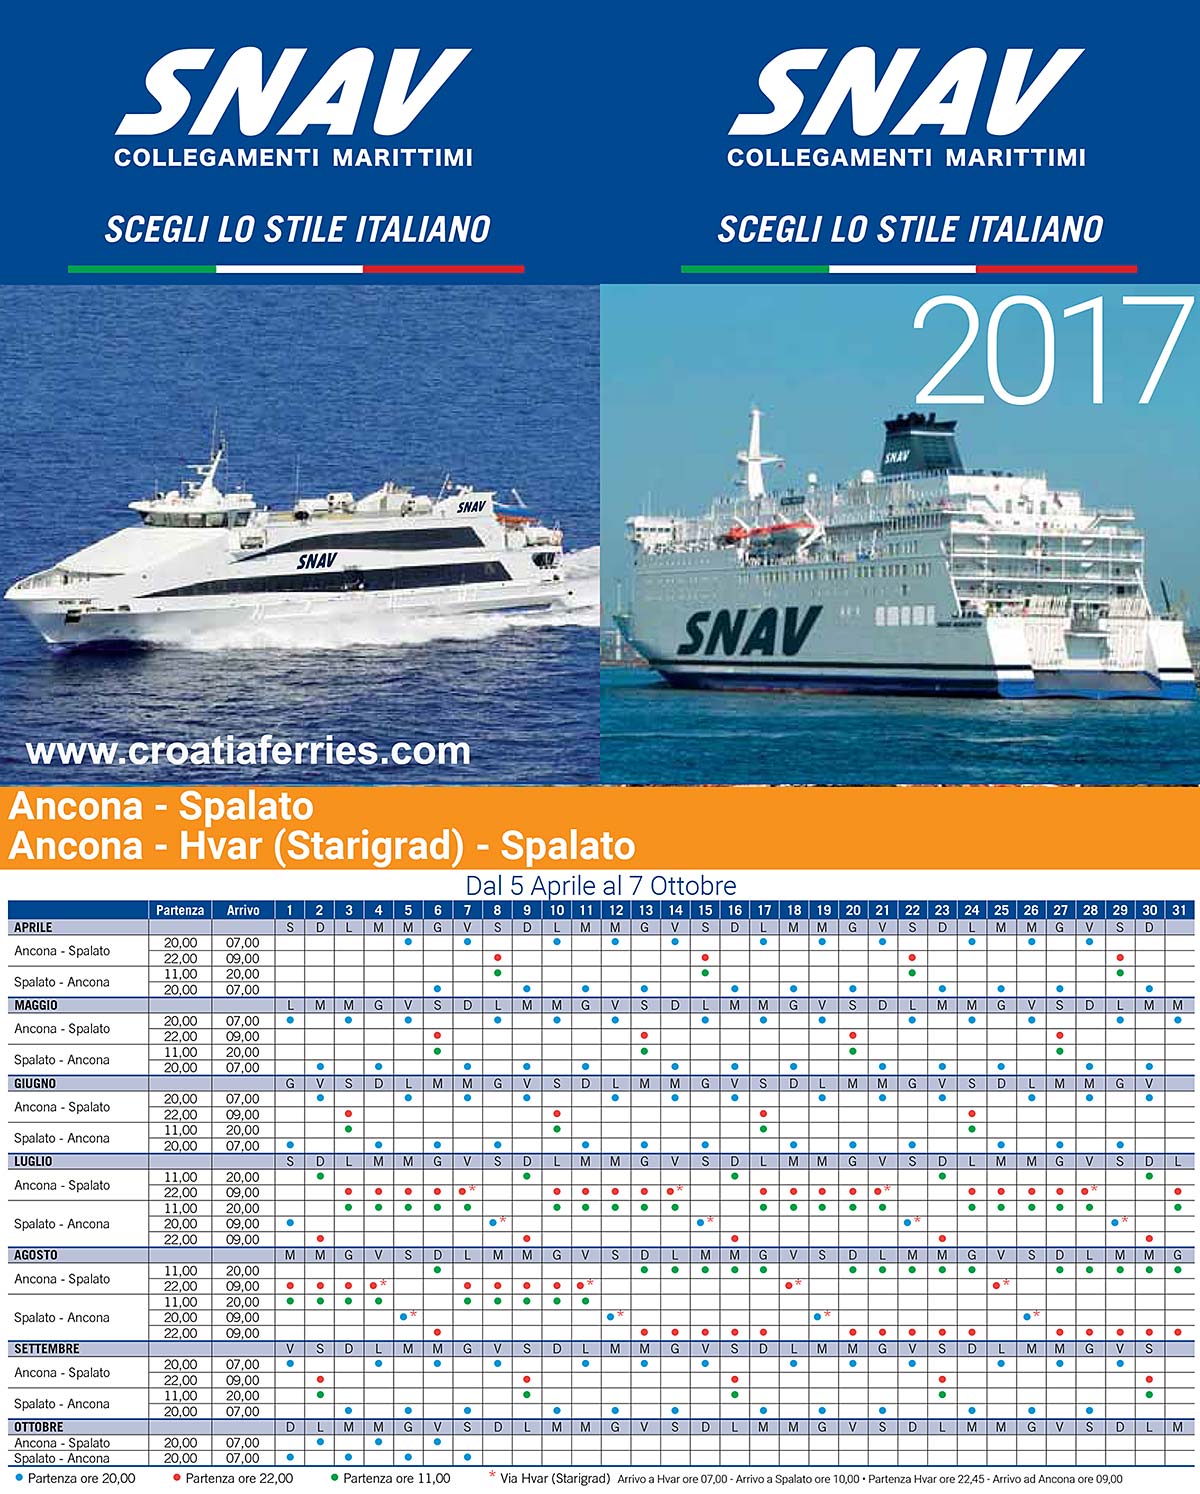 Snav Ferries Schedules for 2017